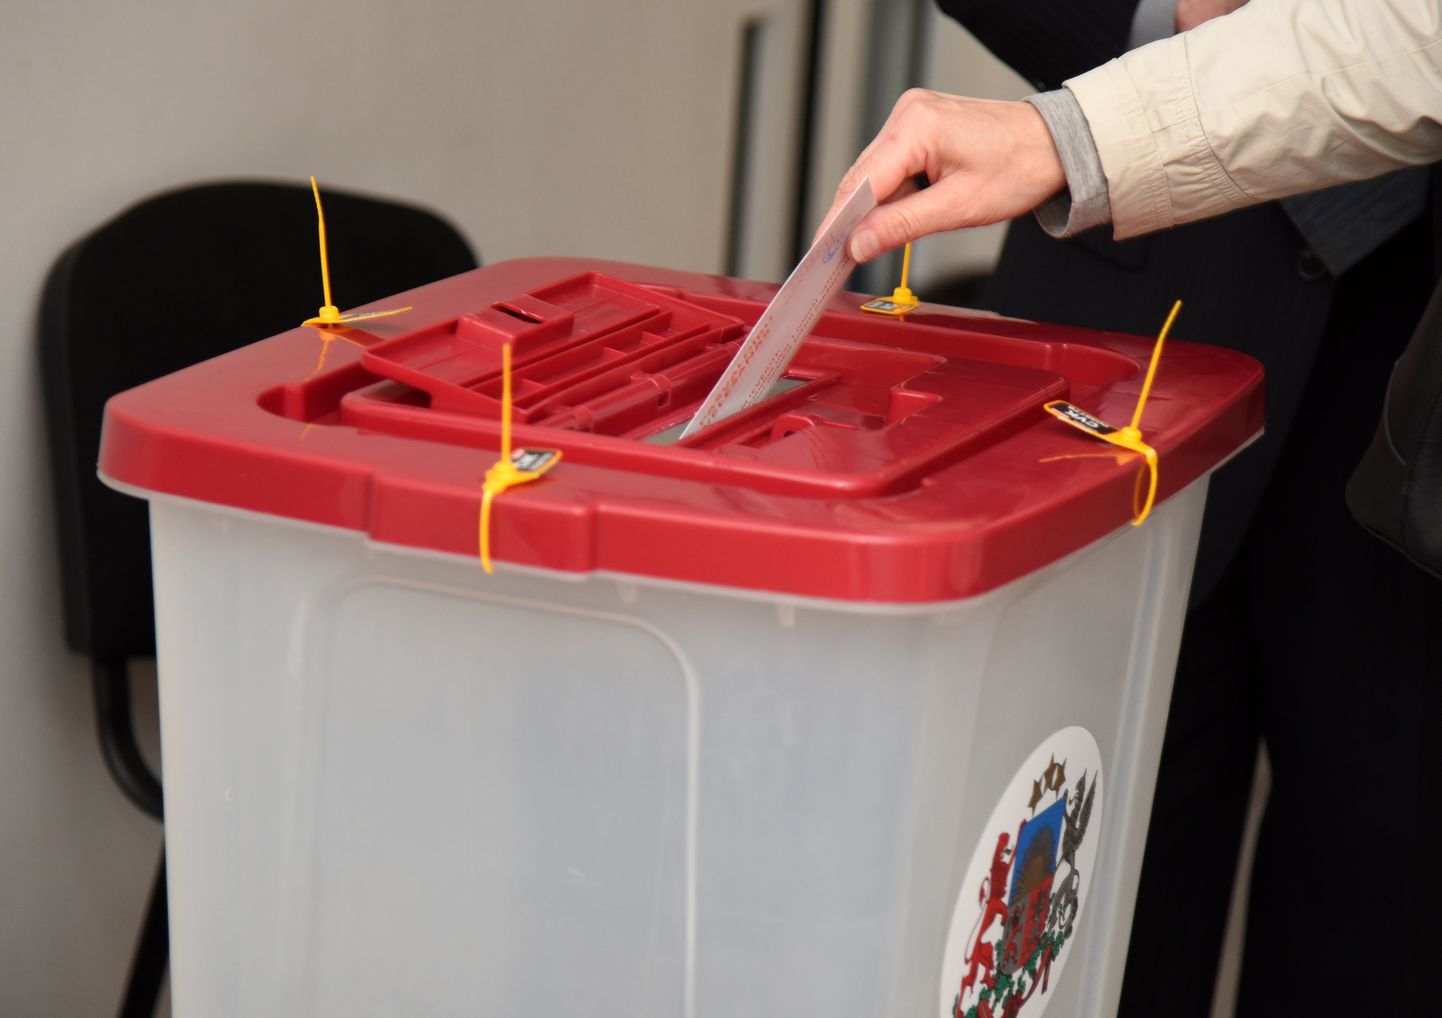 Vēlēšanu urna 38. pašvaldību vēlēšanu iecirknī J.G.Herdena Rīgas Grīziņkalna vidusskolā.